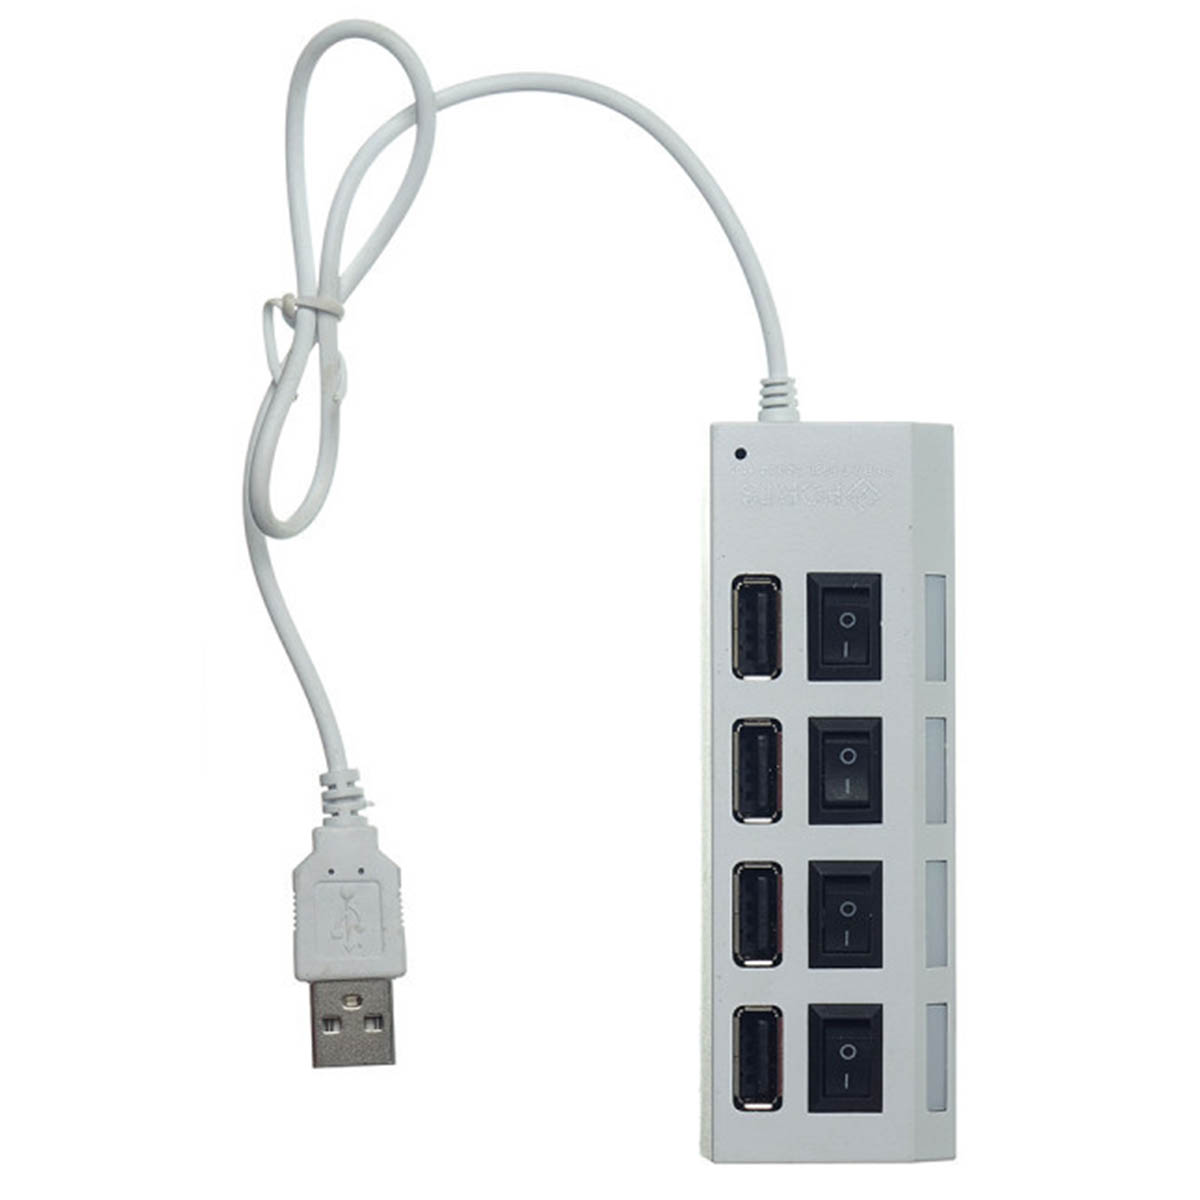 Переходник, хаб концентратор MRM JC401 USB на 4 USB, цвет белый